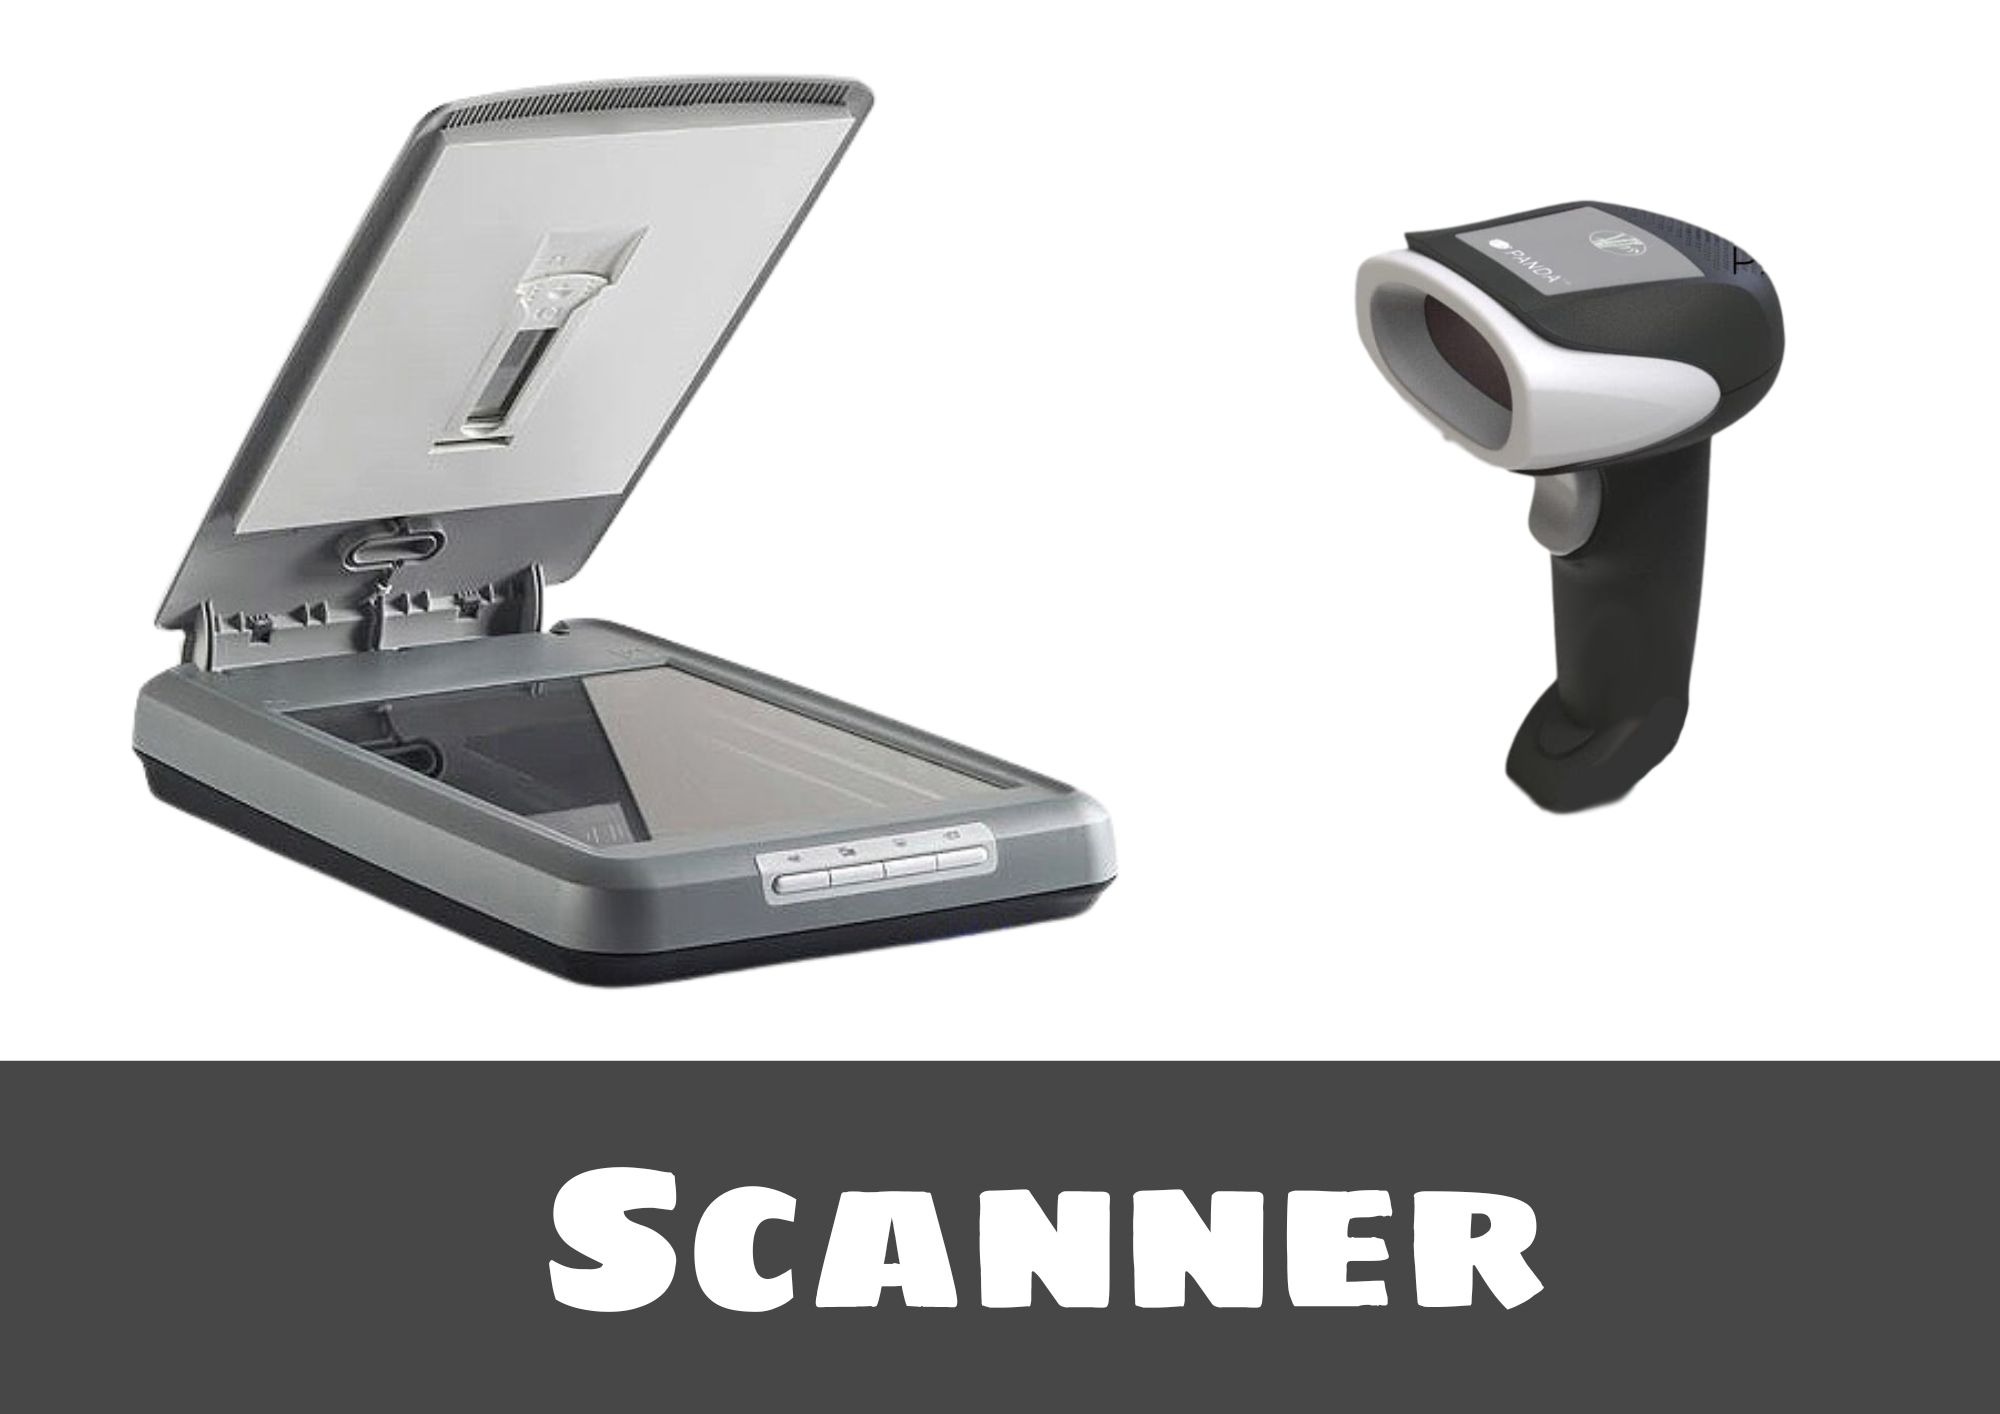 स्कैनर क्या है? कैसे काम करता है? और प्रकार - What Is Scanner In Hindi